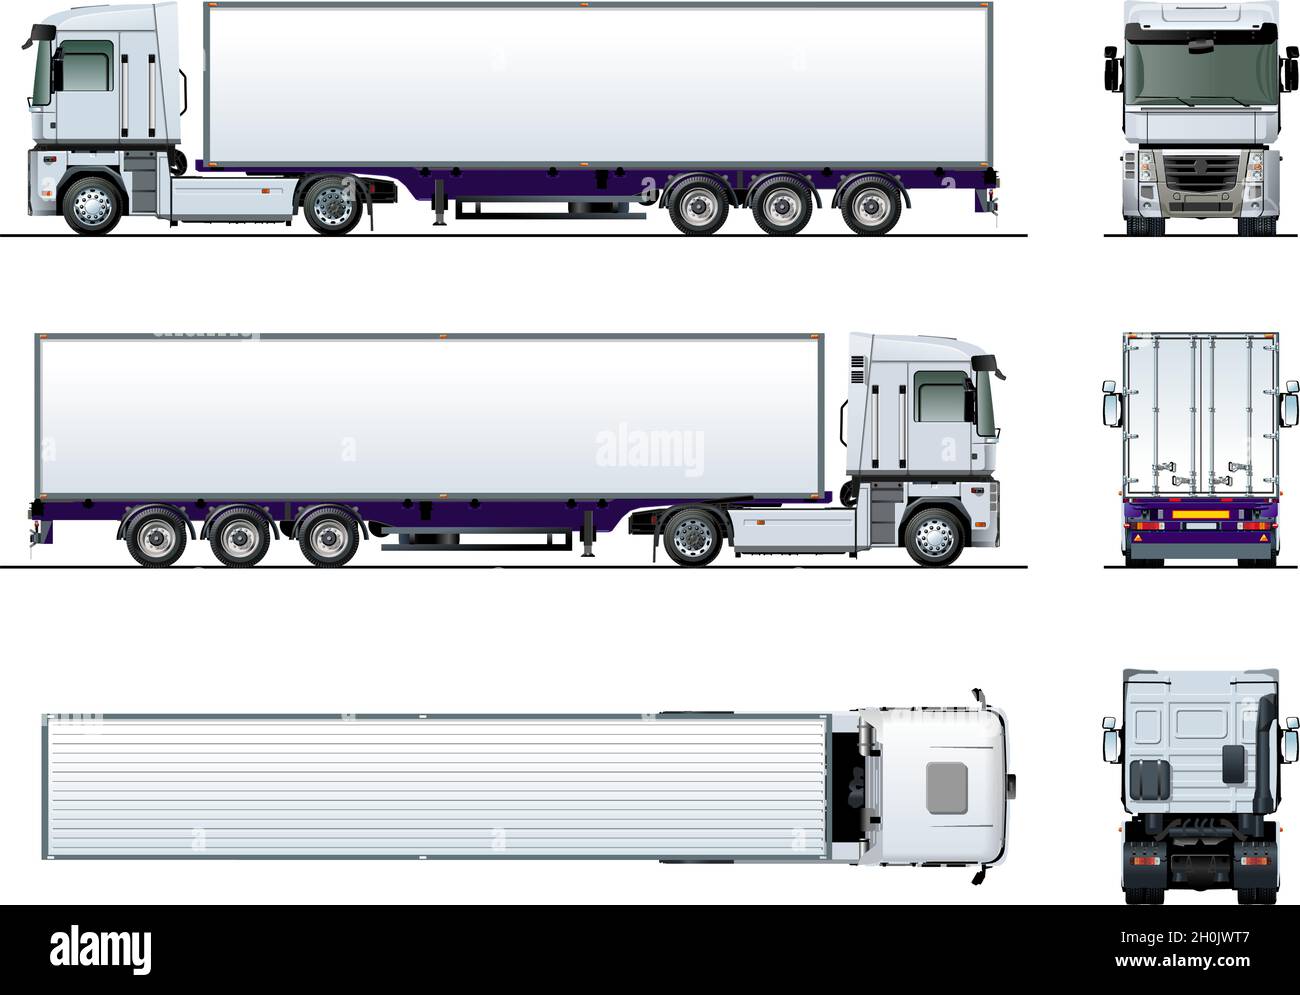 Veicolo cargo semi rimorchio camion mockup per auto marcare a caldo e pubblicità. Disponibile EPS-10 separato da gruppi e livelli con effetti di trasparenza per Illustrazione Vettoriale